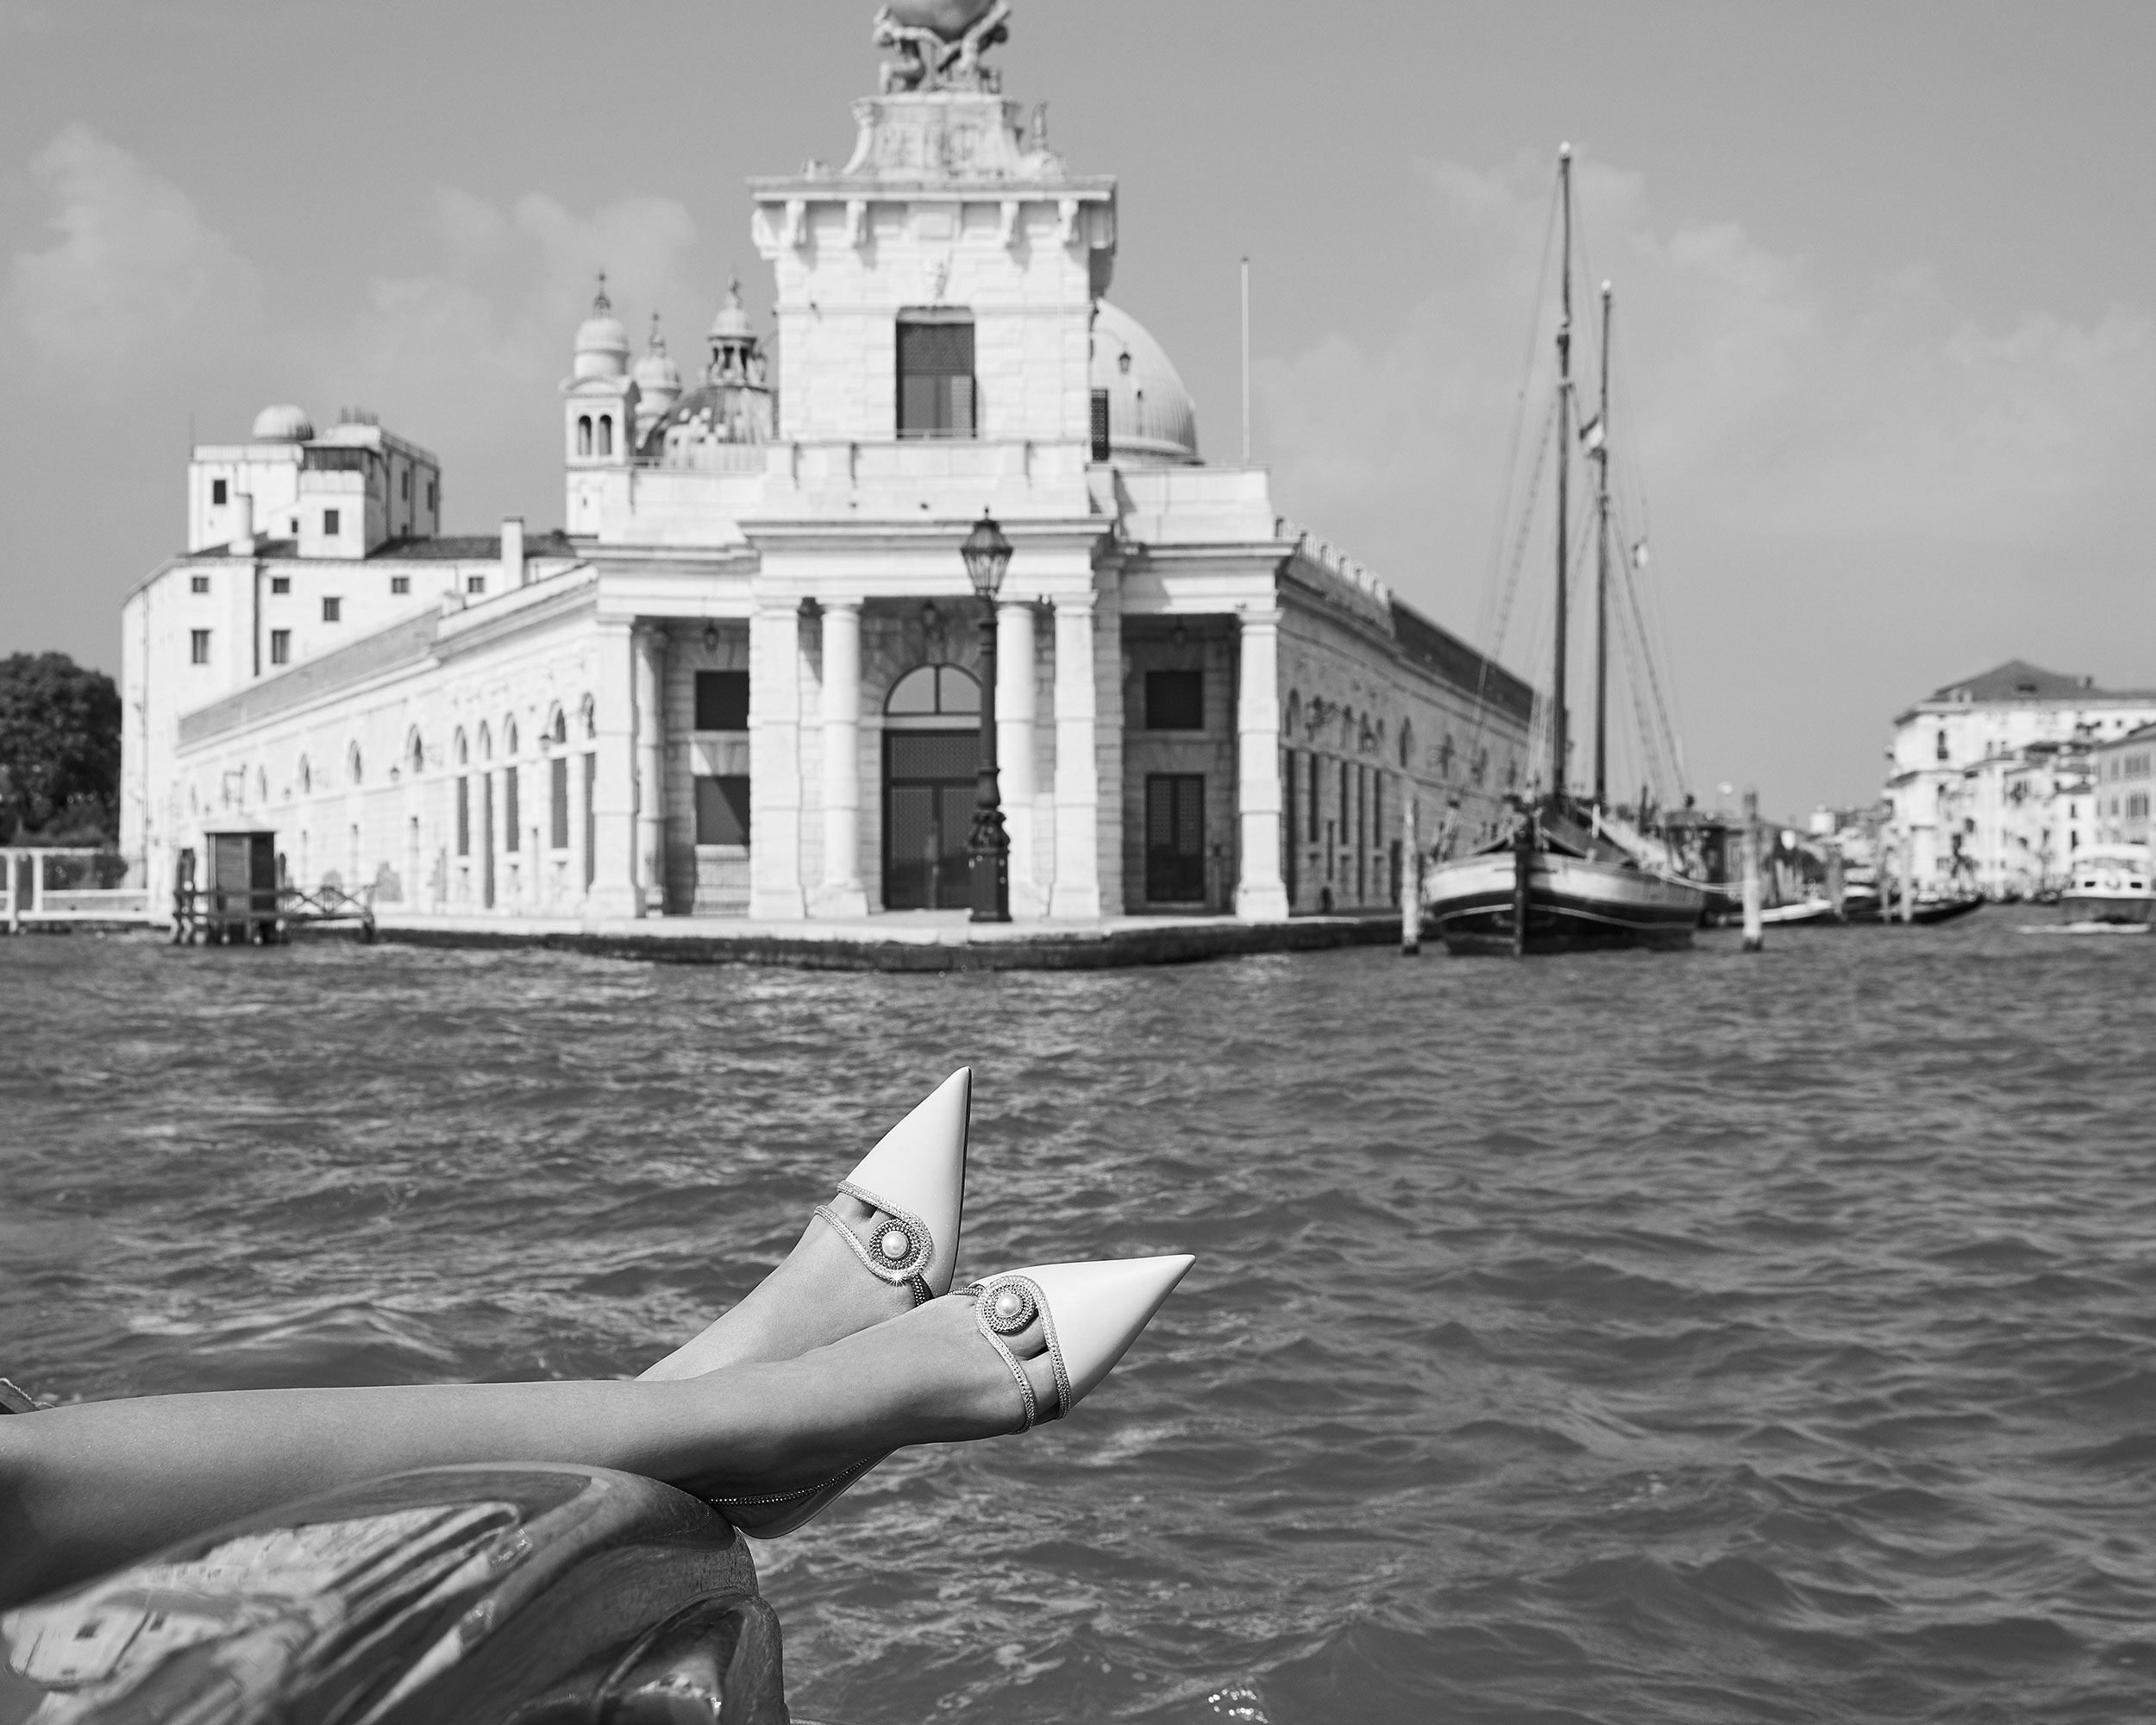 René Caovilla Shoes in Venice | Alison Brezza | Caovilla | Numerique Retouch Photo Retouching Studio